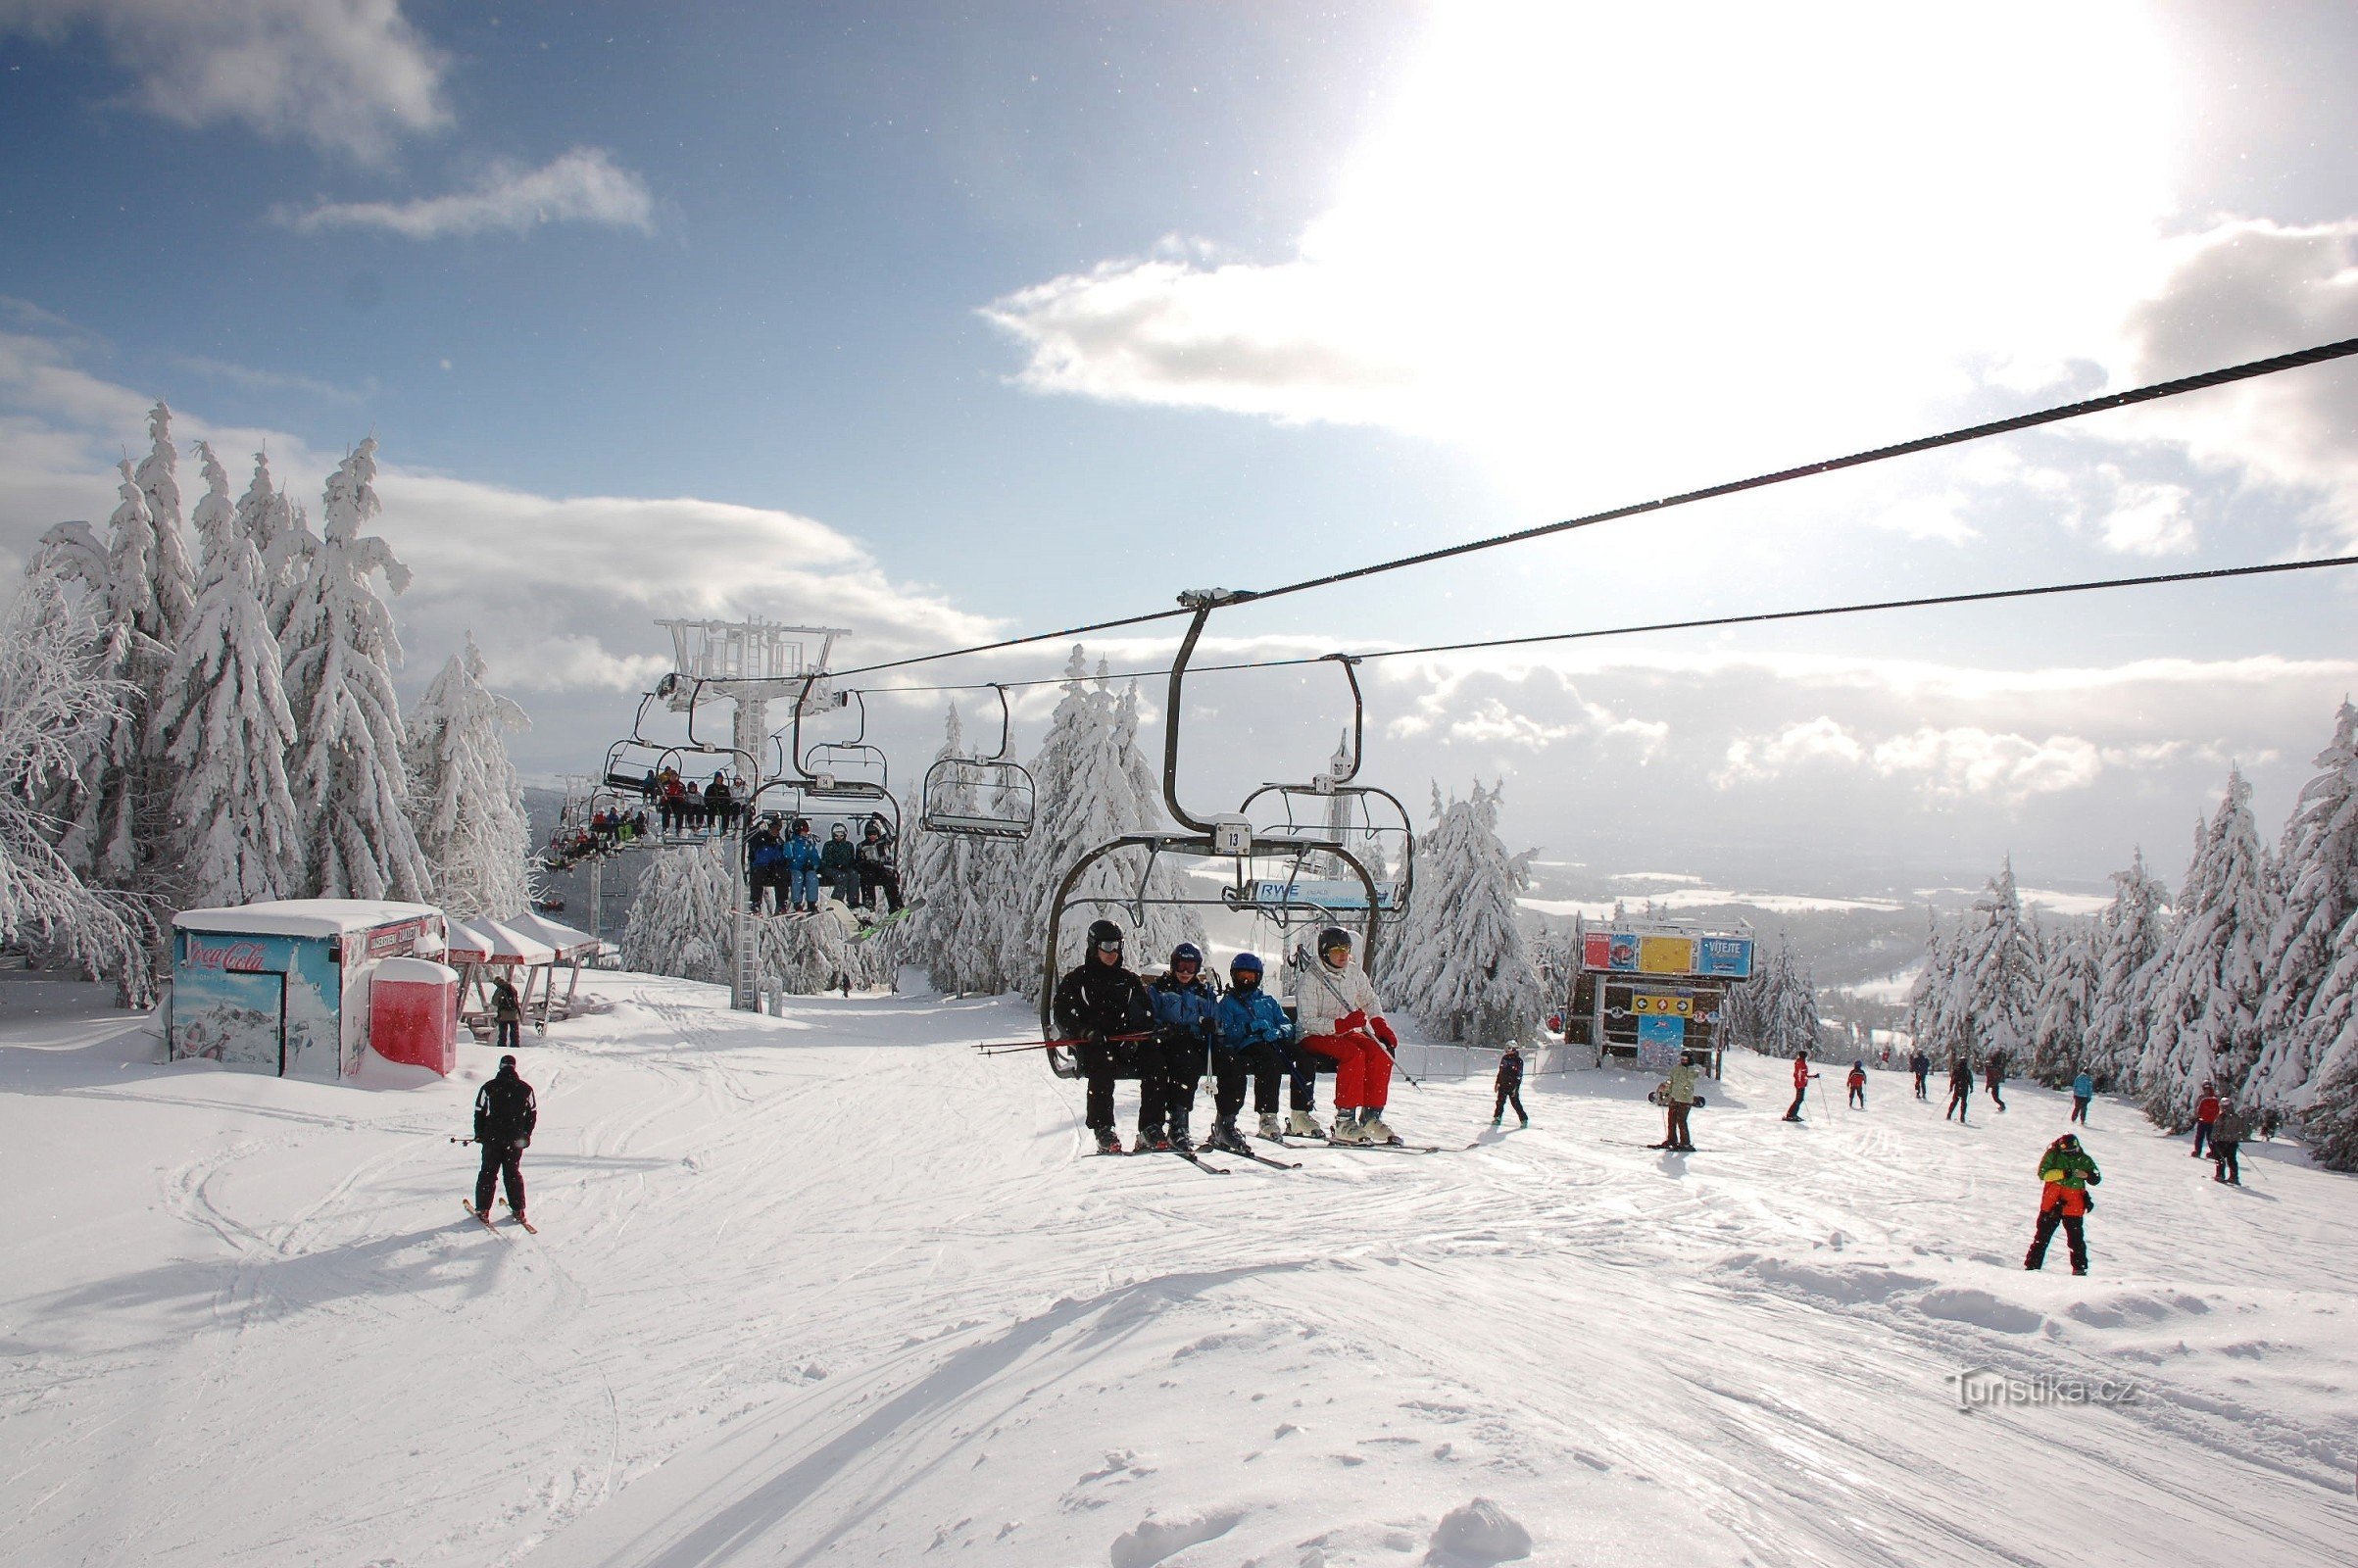 Centre de ski Říčky - une station de ski moderne au cœur des Montagnes de l'Aigle